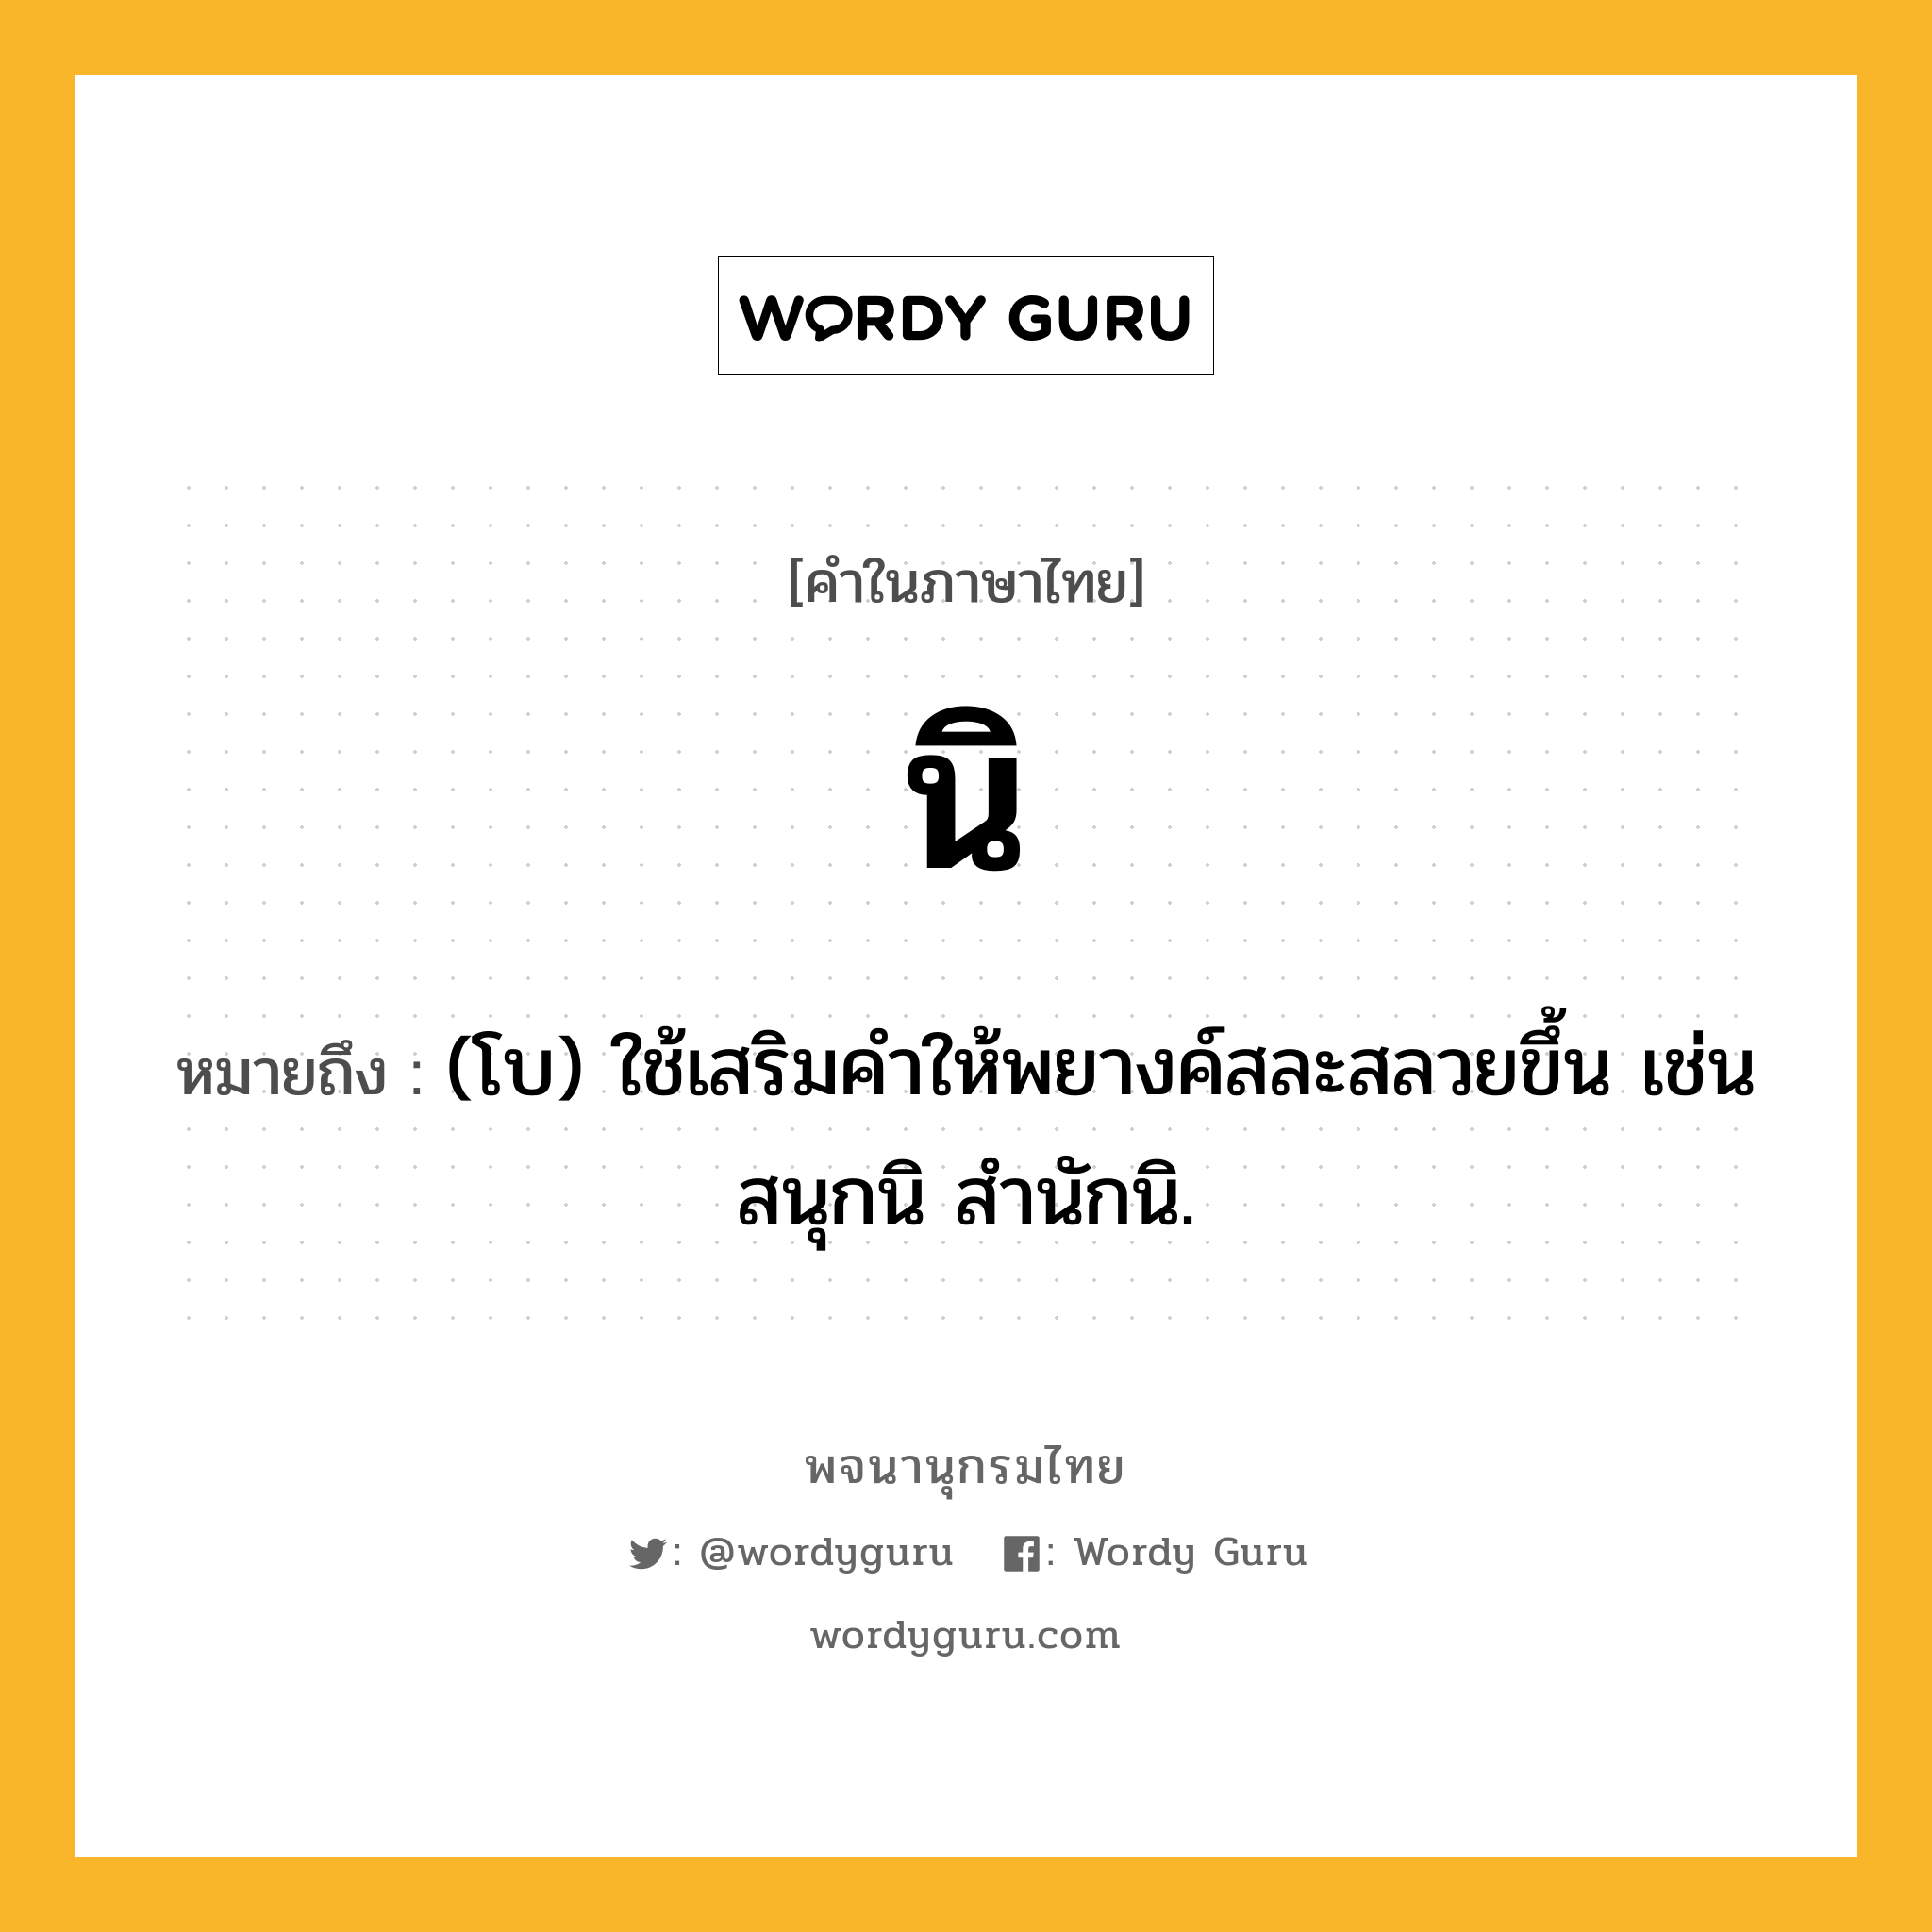 นิ ความหมาย หมายถึงอะไร?, คำในภาษาไทย นิ หมายถึง (โบ) ใช้เสริมคําให้พยางค์สละสลวยขึ้น เช่น สนุกนิ สํานักนิ.